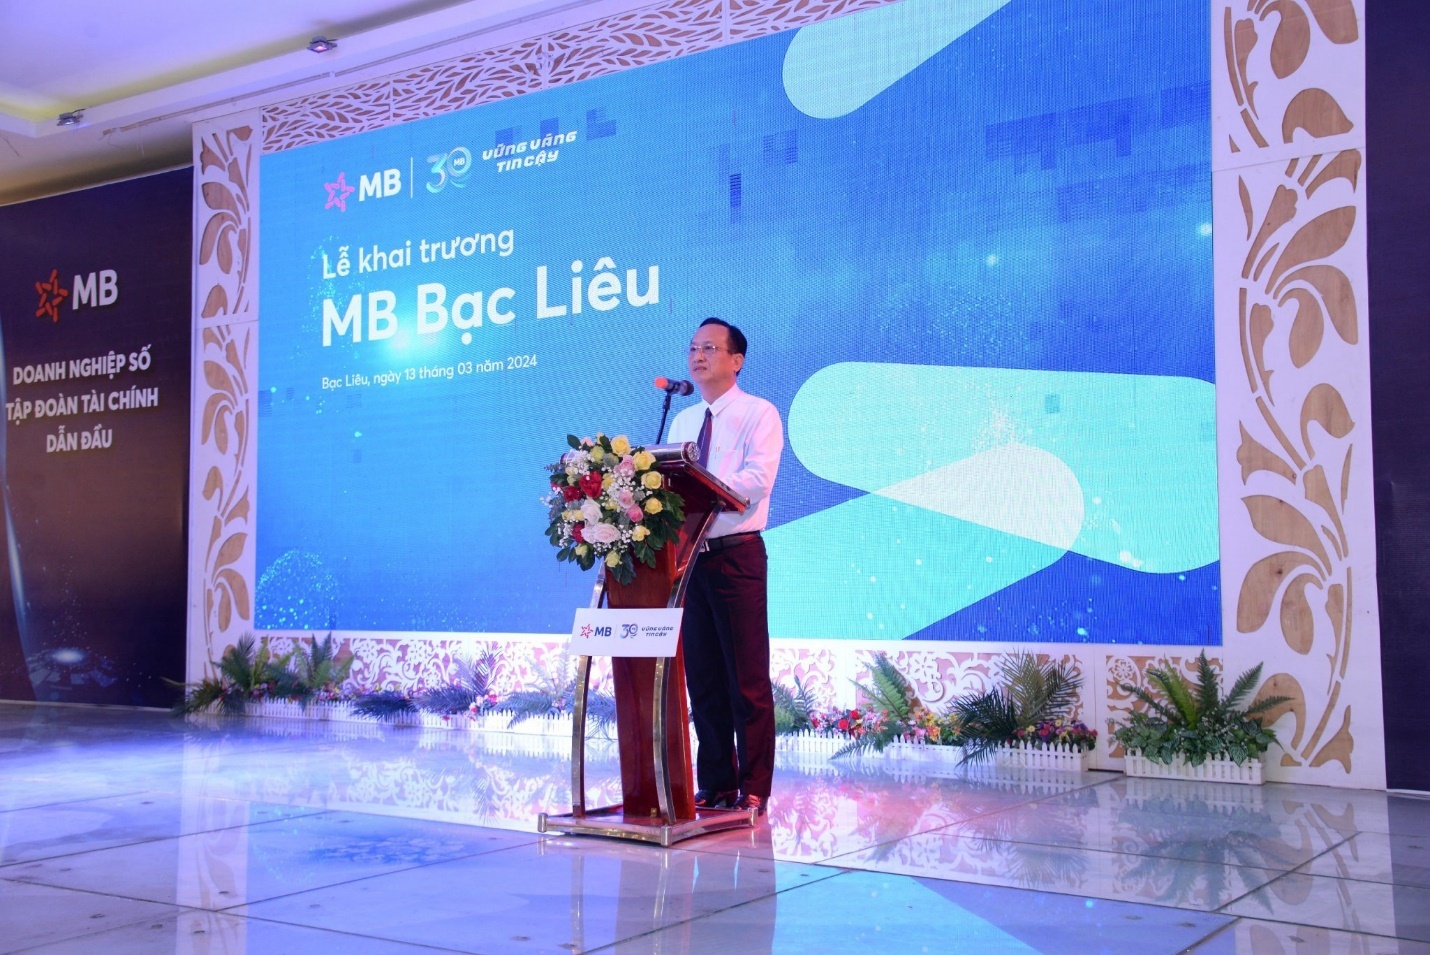 Ông Phạm Văn Thiều - Ủy viên Ban Thường vụ Tỉnh ủy, Phó Bí thư Tỉnh ủy, Chủ tịch UBND tỉnh Bạc Liêu phát biểu tại sự kiện